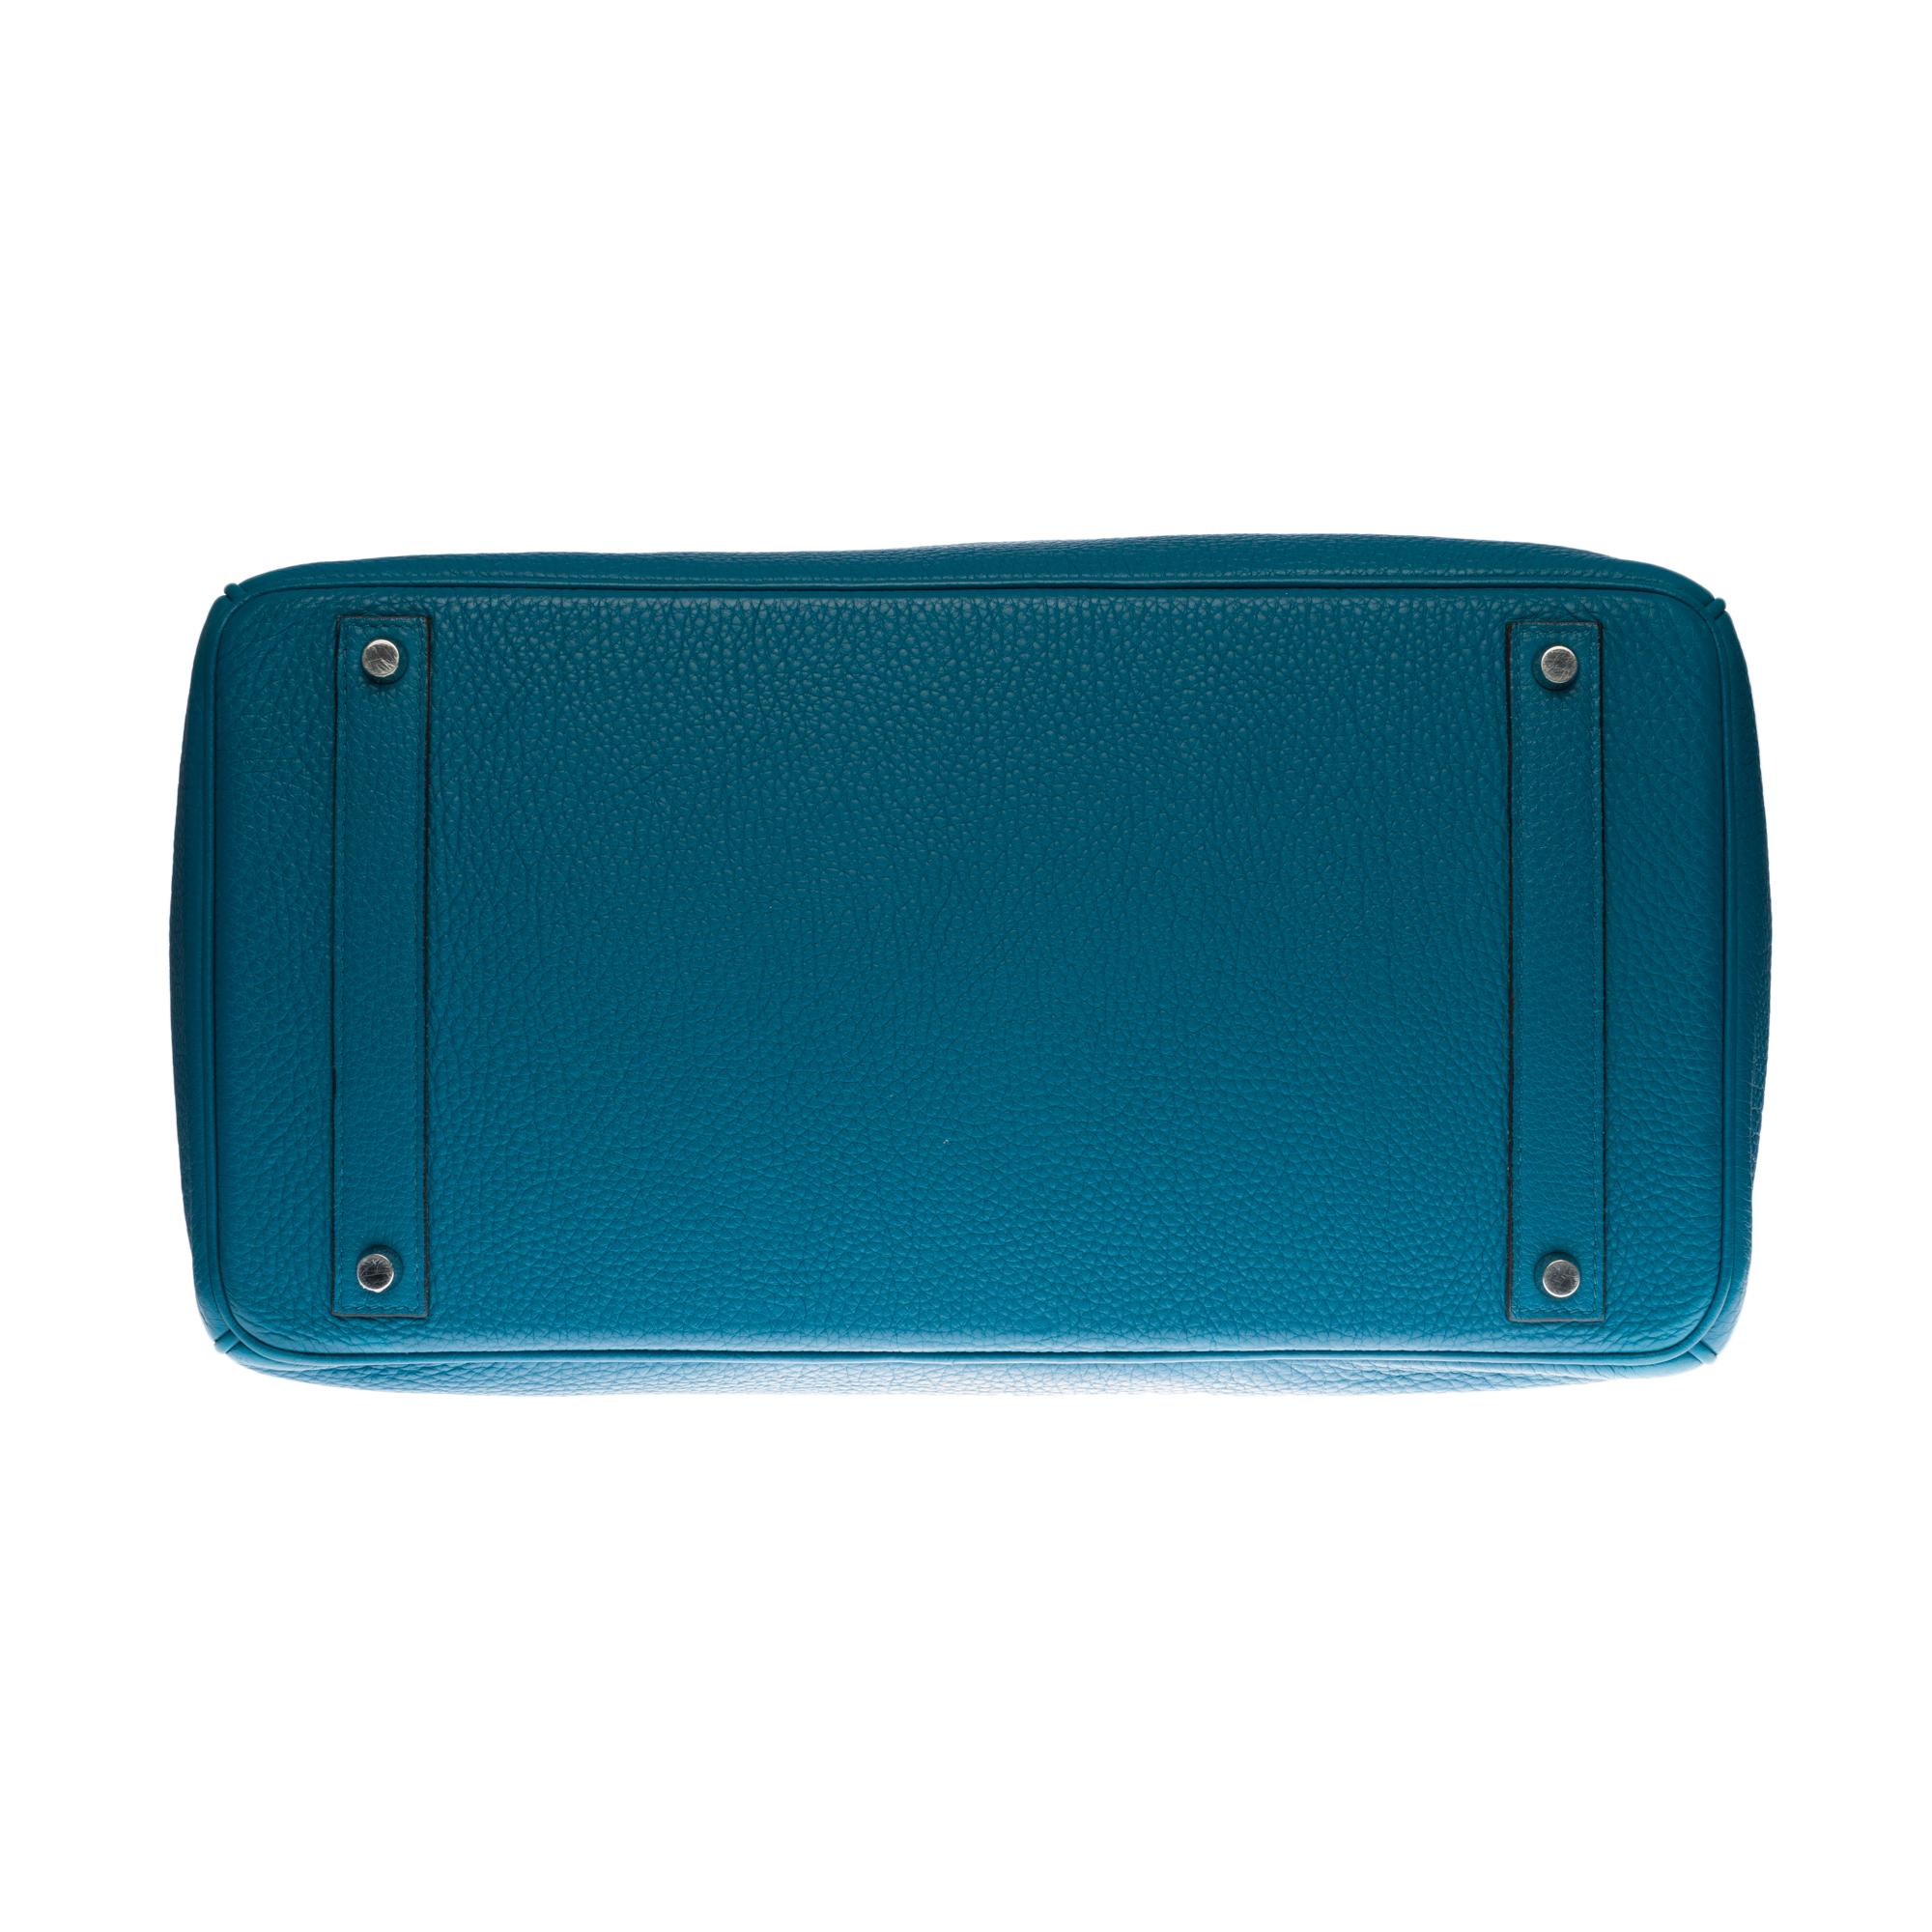 Stunning Hermes Birkin 40cm handbag in Blue Pétrole Togo leather, SHW 3